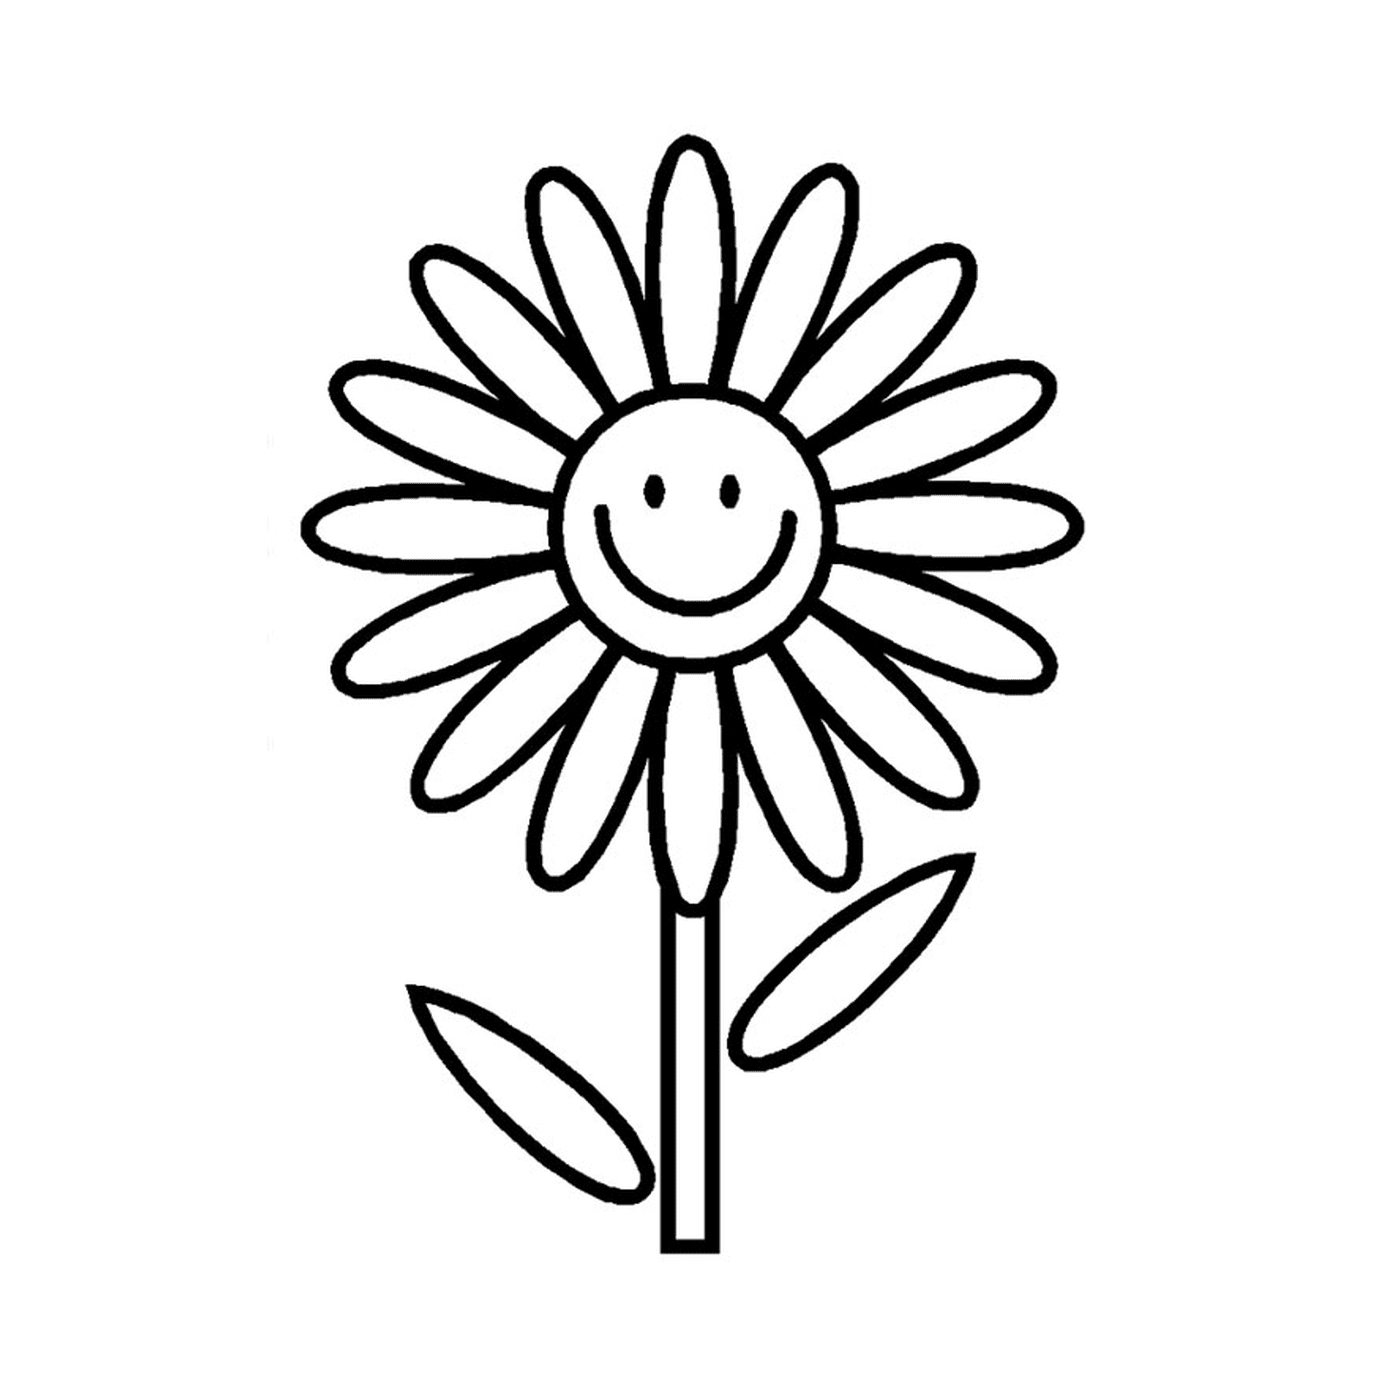  Una flor sencilla con una cara sonriente 